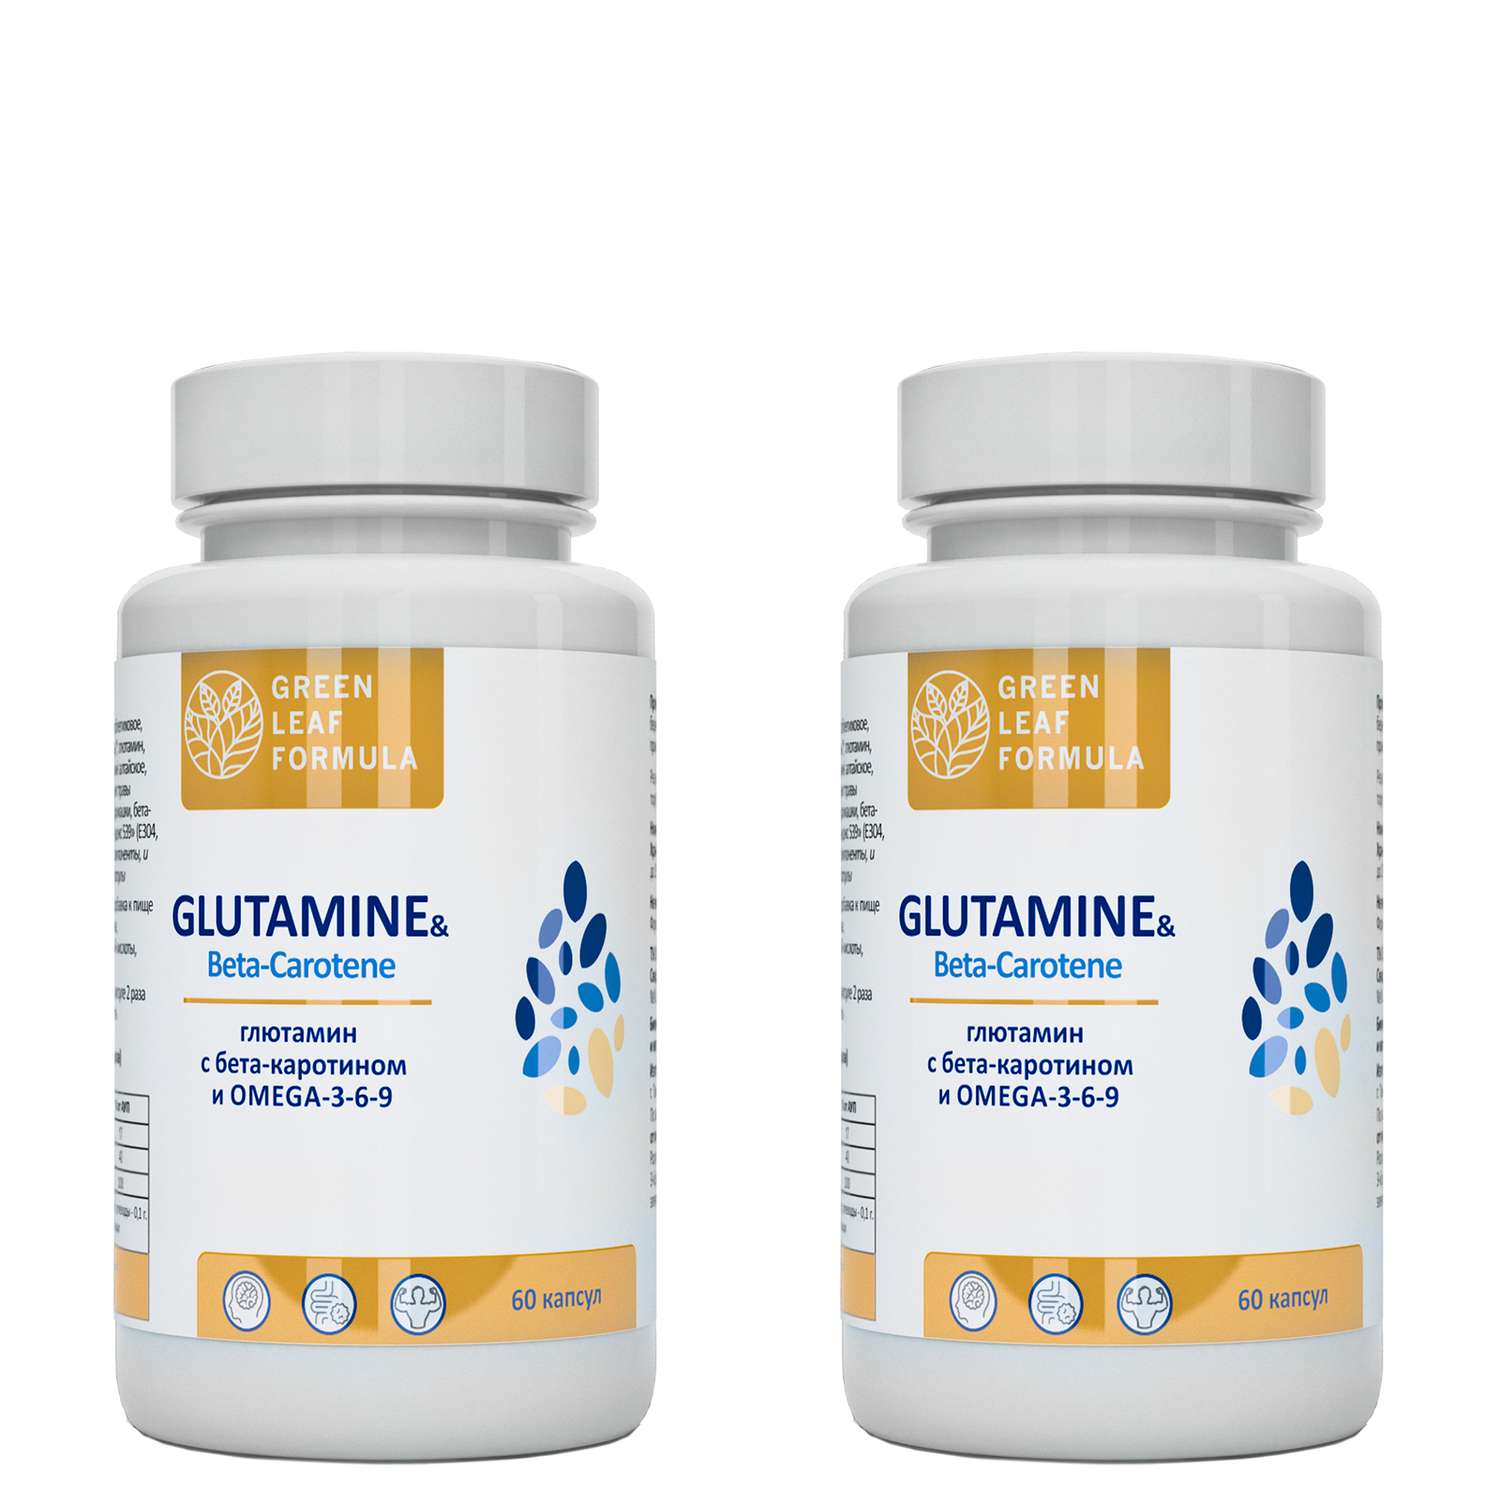 Аминокислота Глютамин Green Leaf Formula витамины для мозга и нервной системы для спорта 2 банки по 60 капсул - фото 1